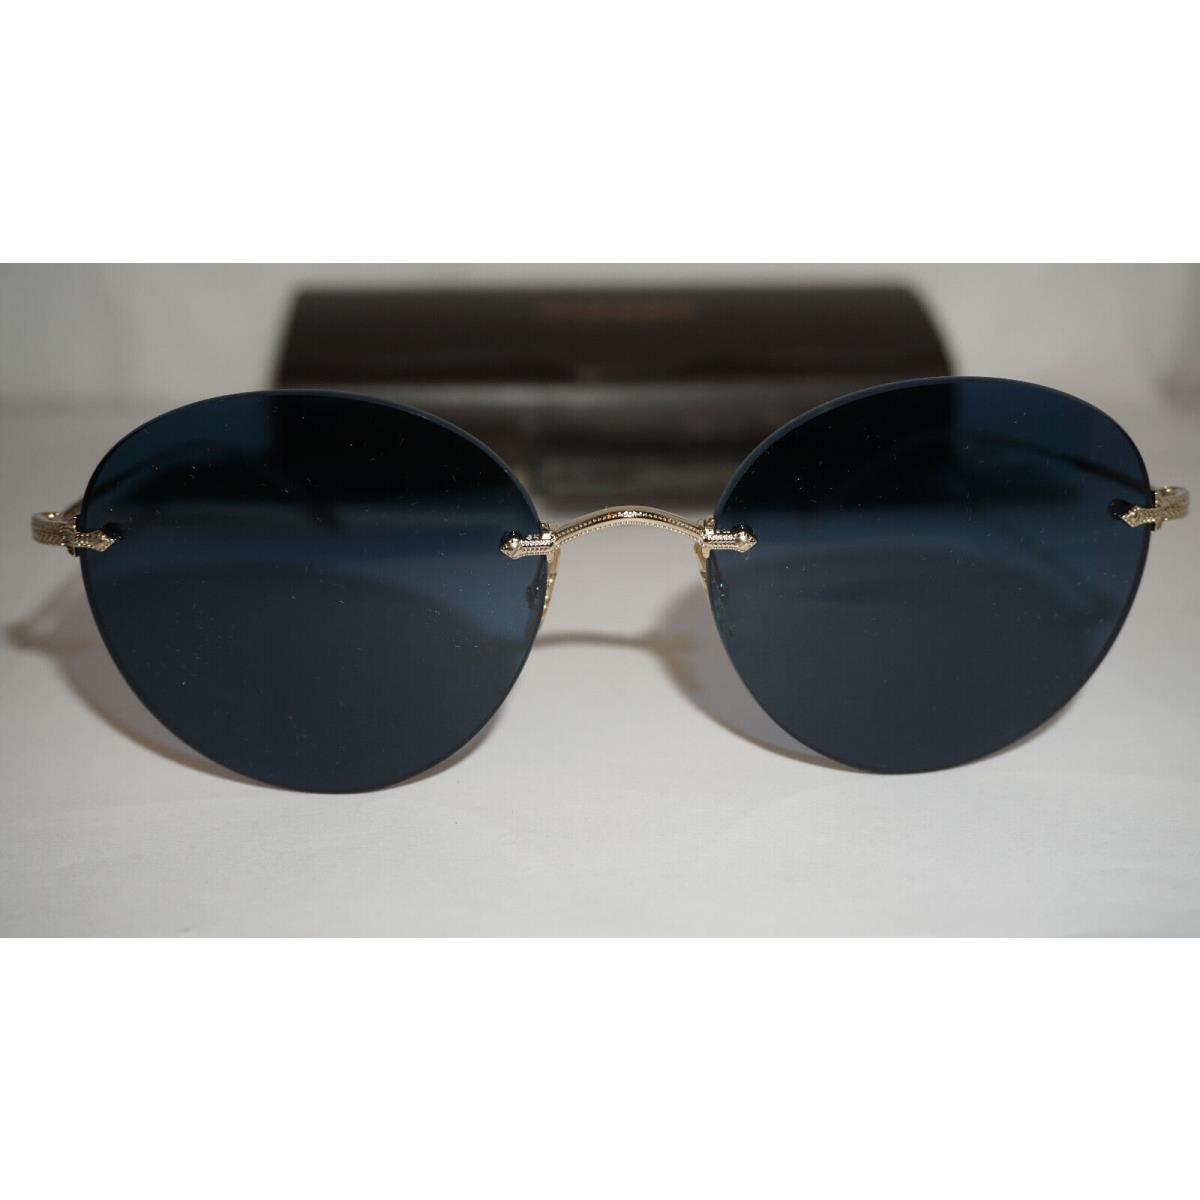 Oliver Peoples sunglasses  - Soft Gold Frame, Blue Lens 1